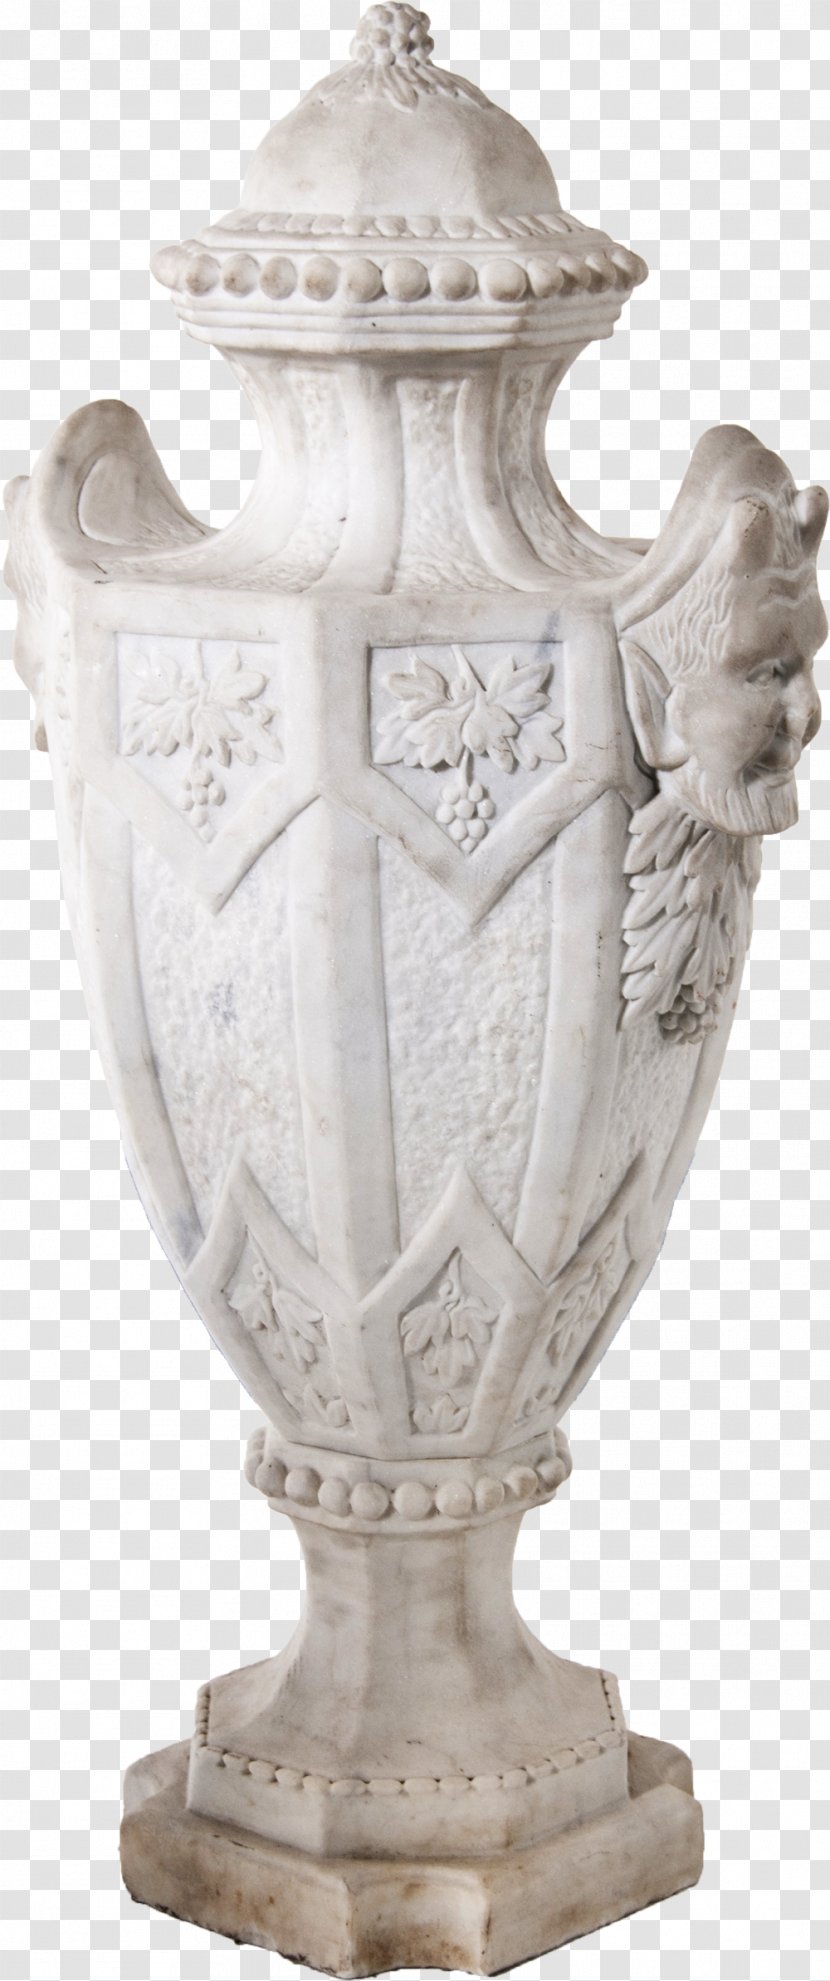 Vase Furniture Stone Carving Ceramic - Figurine Transparent PNG